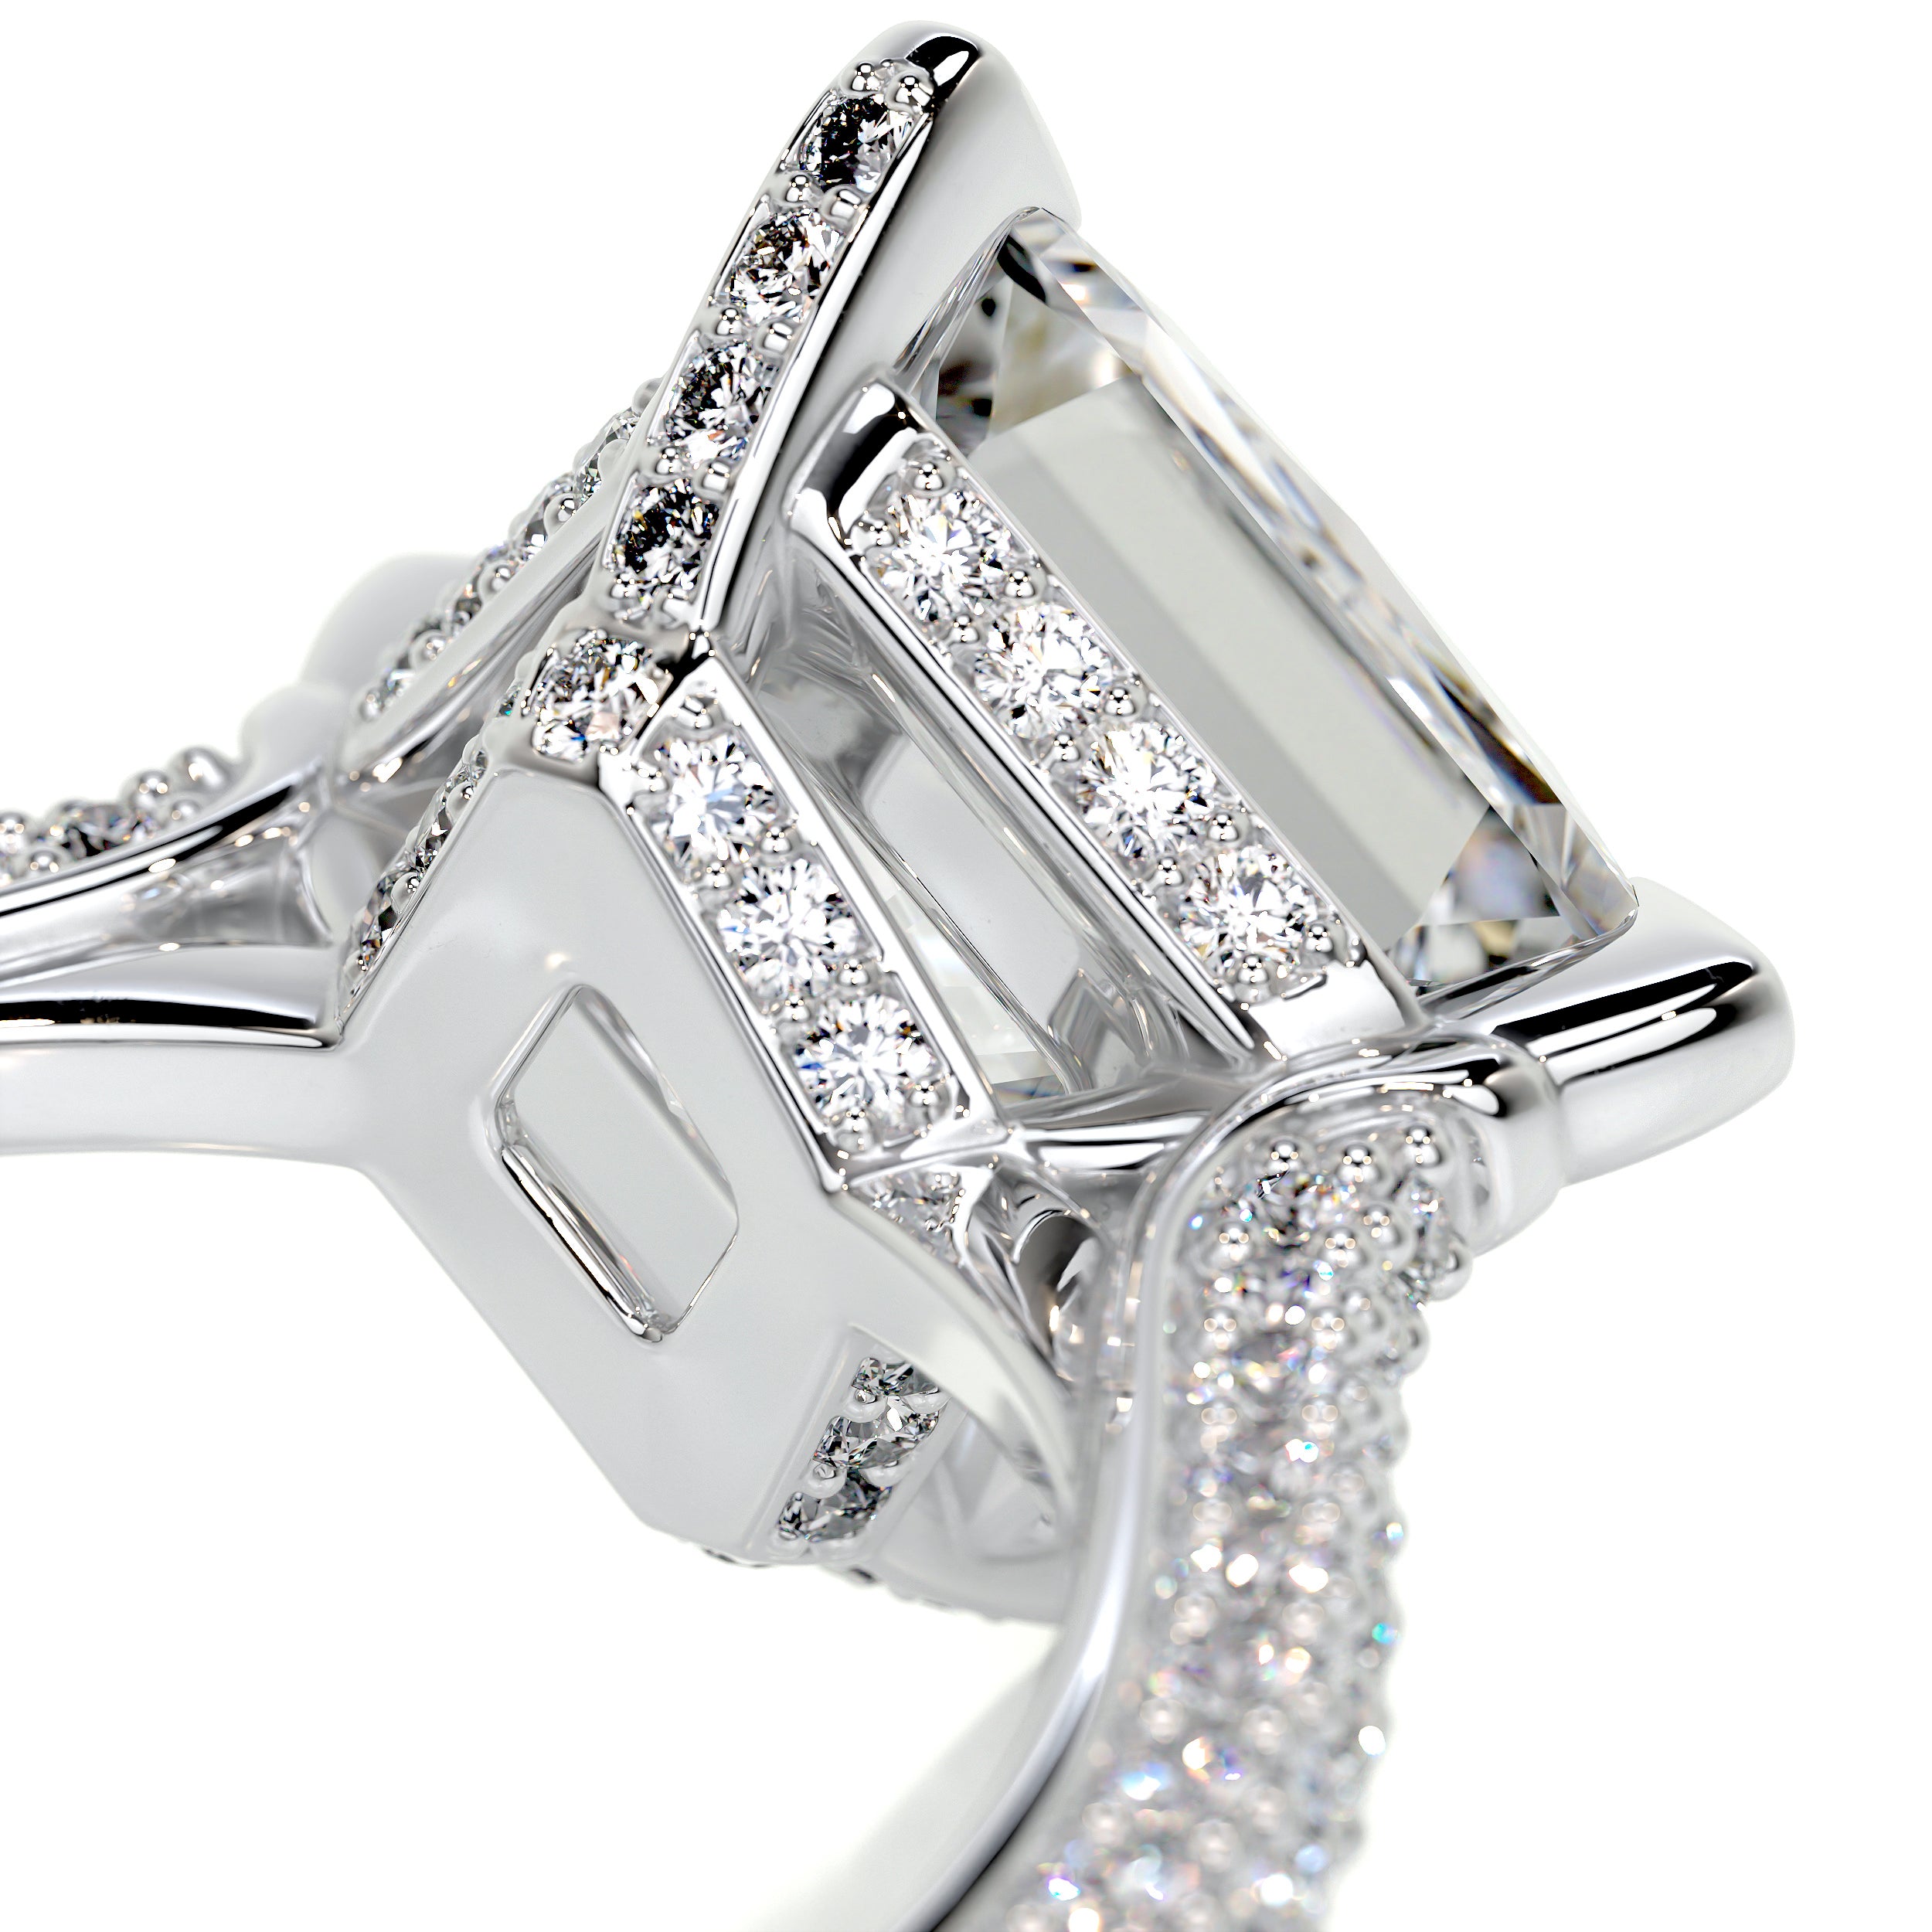 Jocelyn Diamond Engagement Ring -18K White Gold